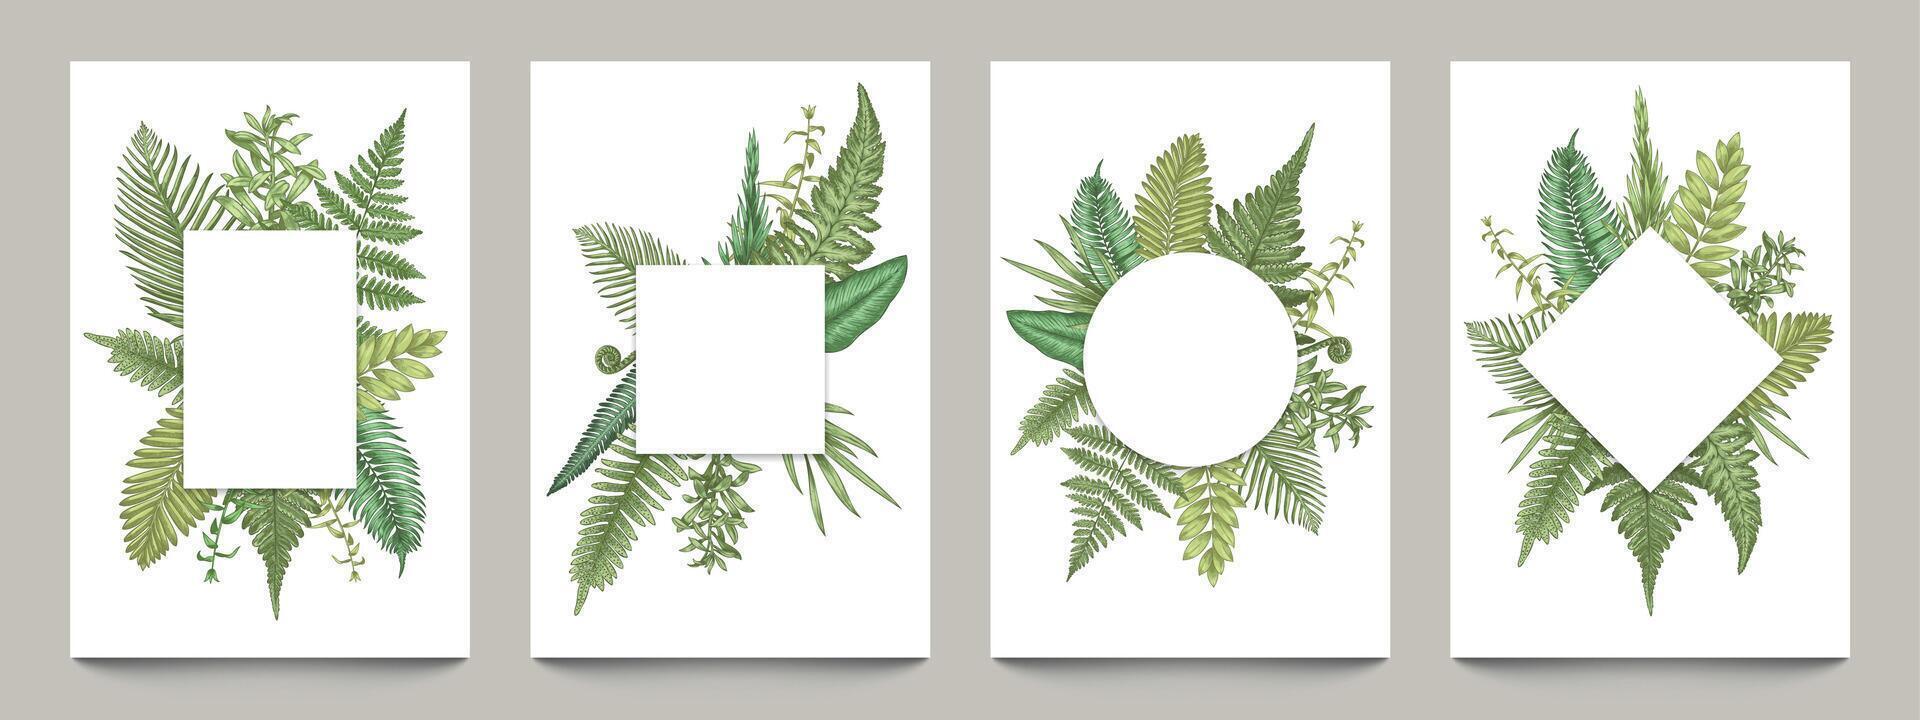 Clásico carteles con botánico fronteras vacío pancartas Bosquejo con rural mano dibujado hierbas y hojas, blanco Boda invitaciones y saludo tarjetas vector conjunto